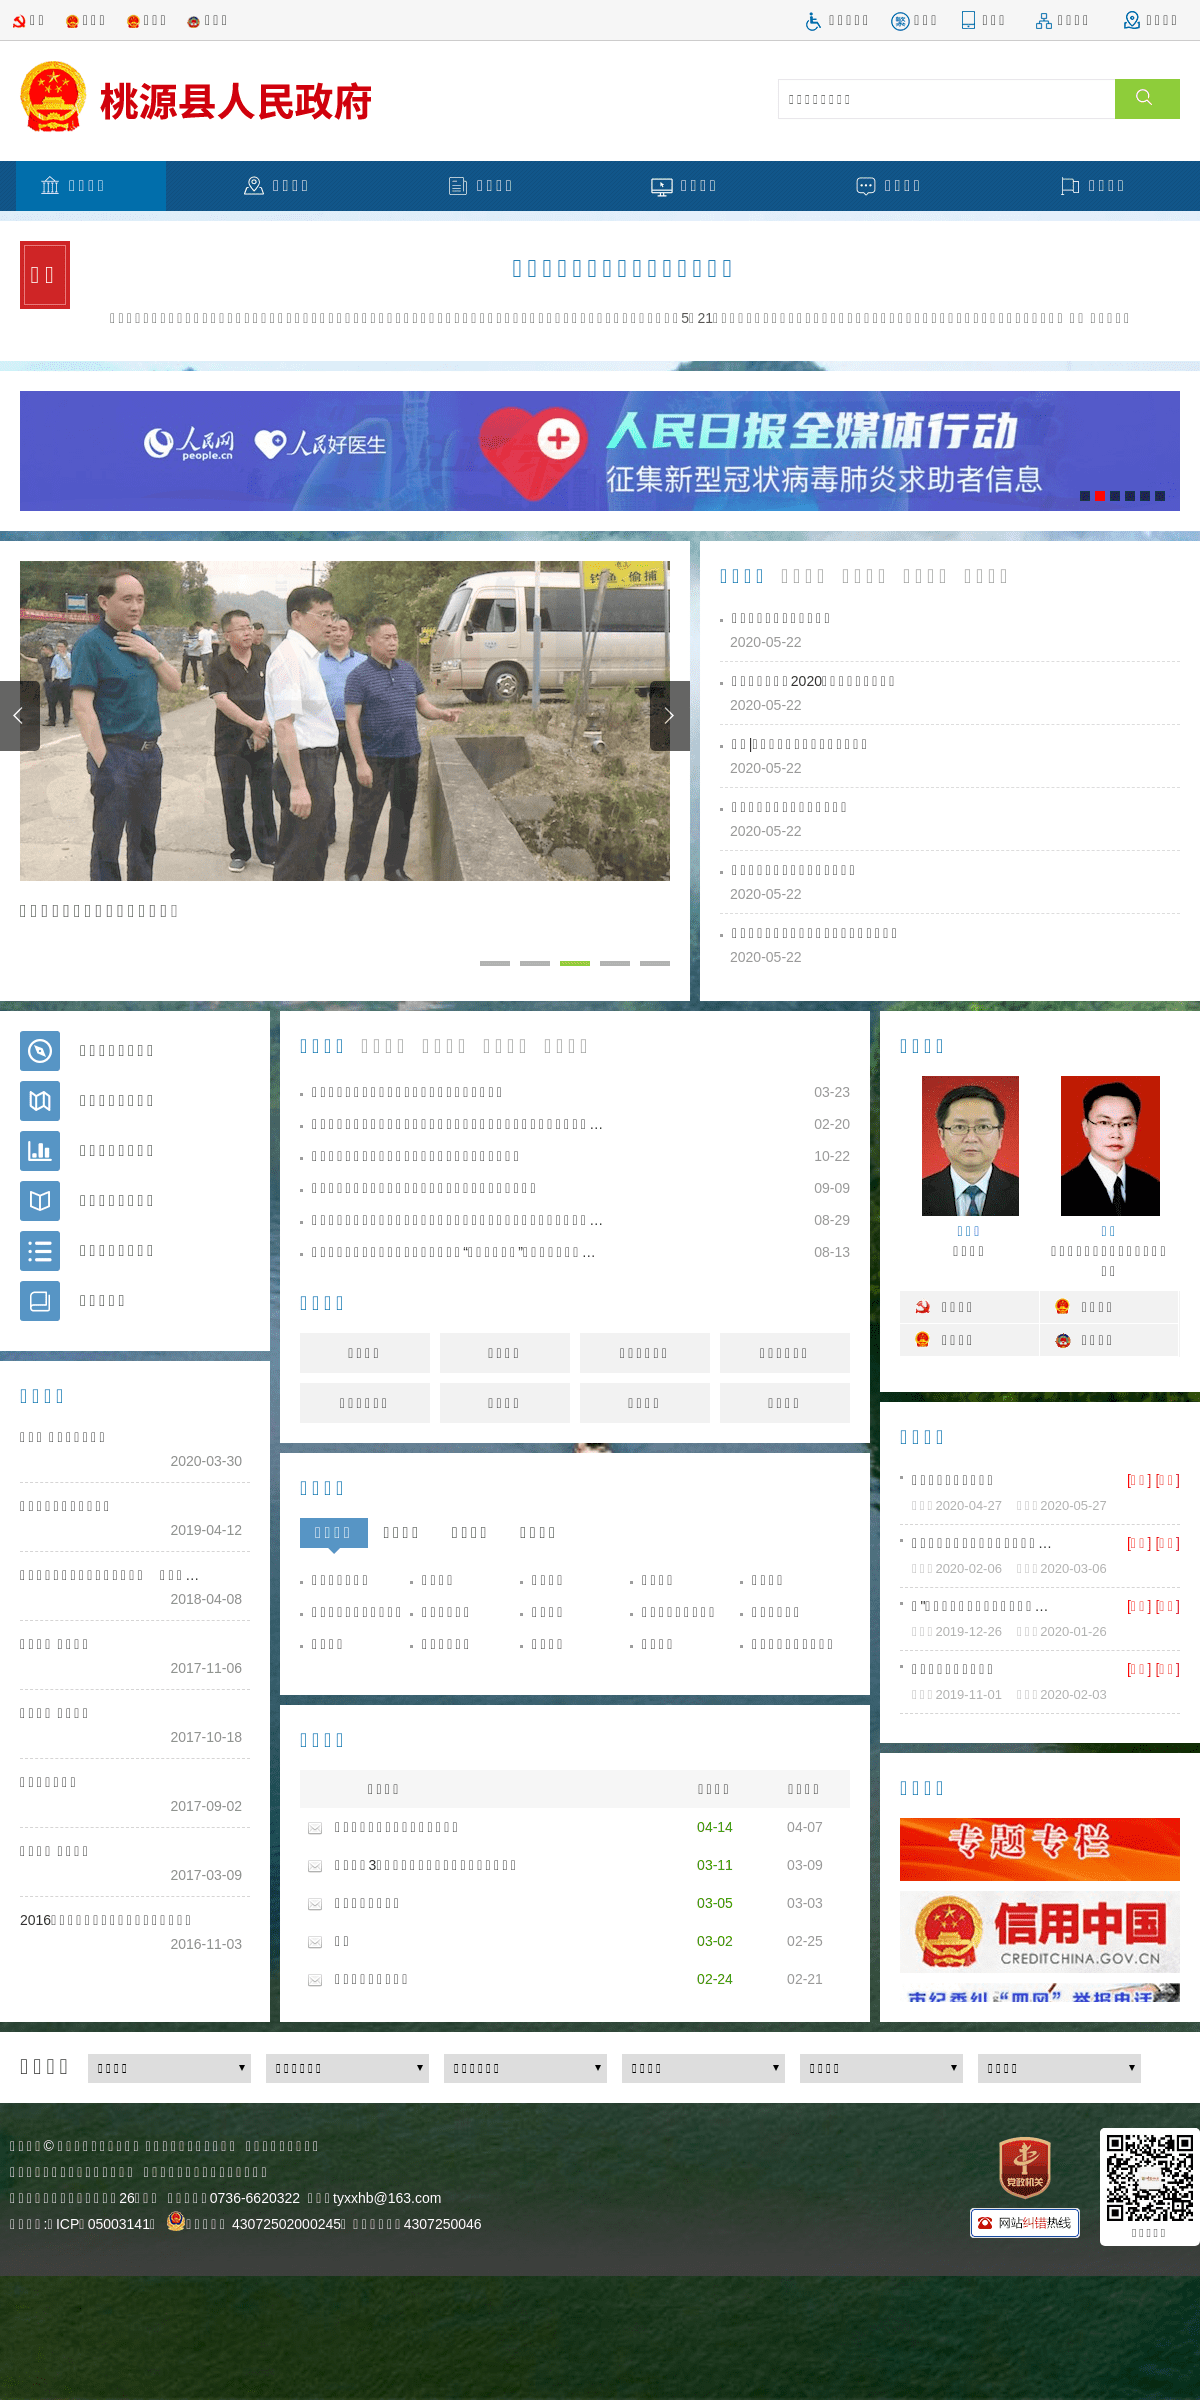 A complete backup of taoyuan.gov.cn